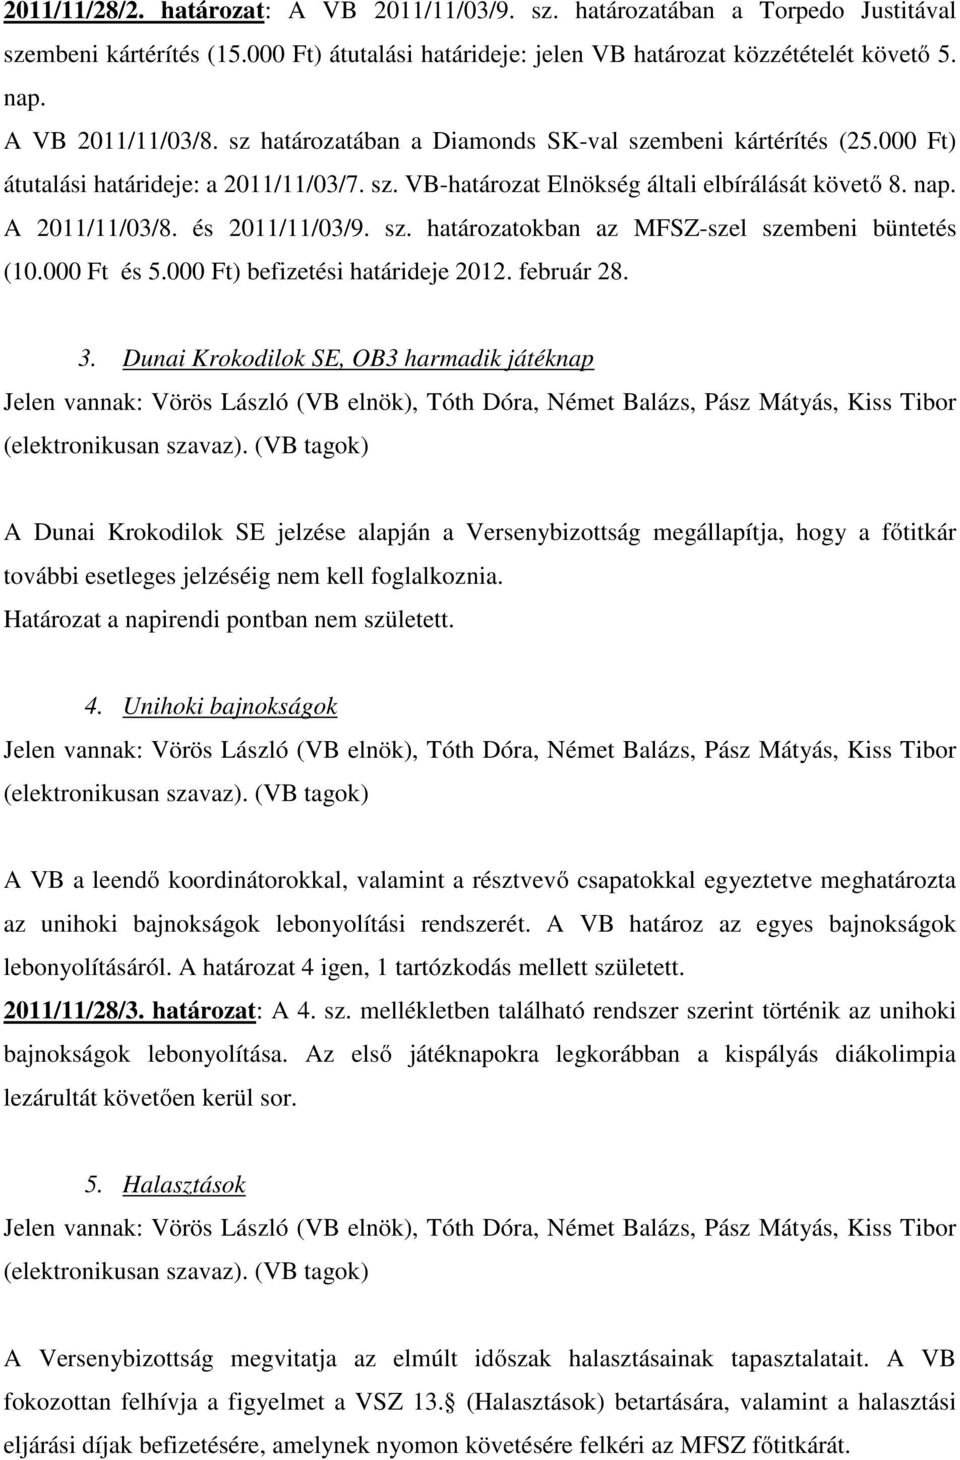 és 2011/11/03/9. sz. határozatokban az MFSZ-szel szembeni büntetés (10.000 Ft és 5.000 Ft) befizetési határideje 2012. február 28. 3.